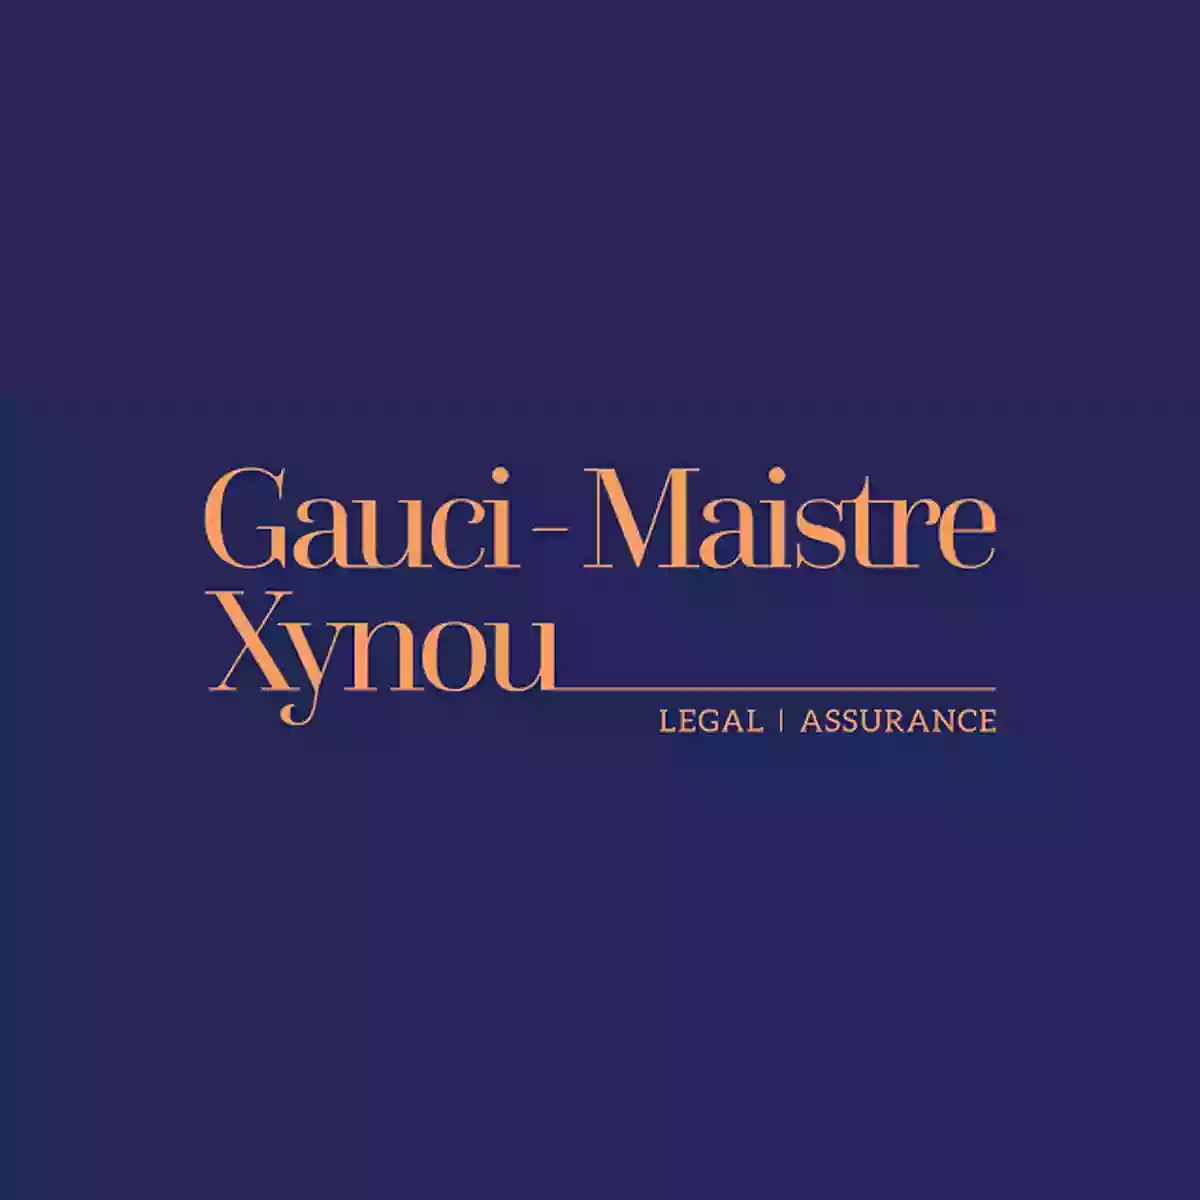 Gauci Maistre - Xynou (GMX Law Firm)